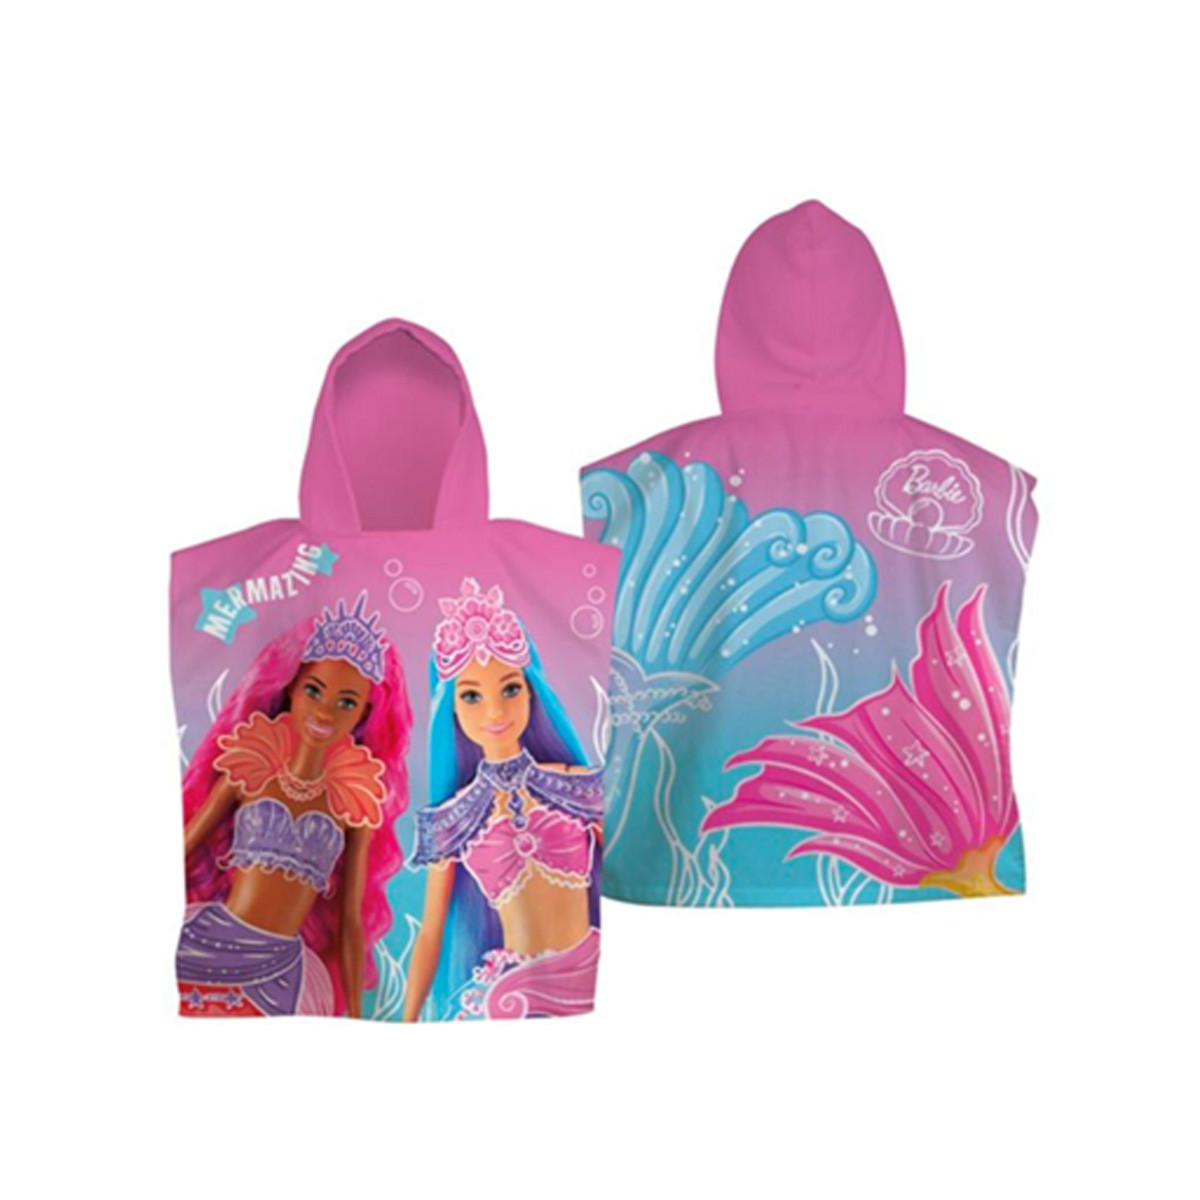 Barbie Mermazing Kids Towel Poncho, Pink - One Size>